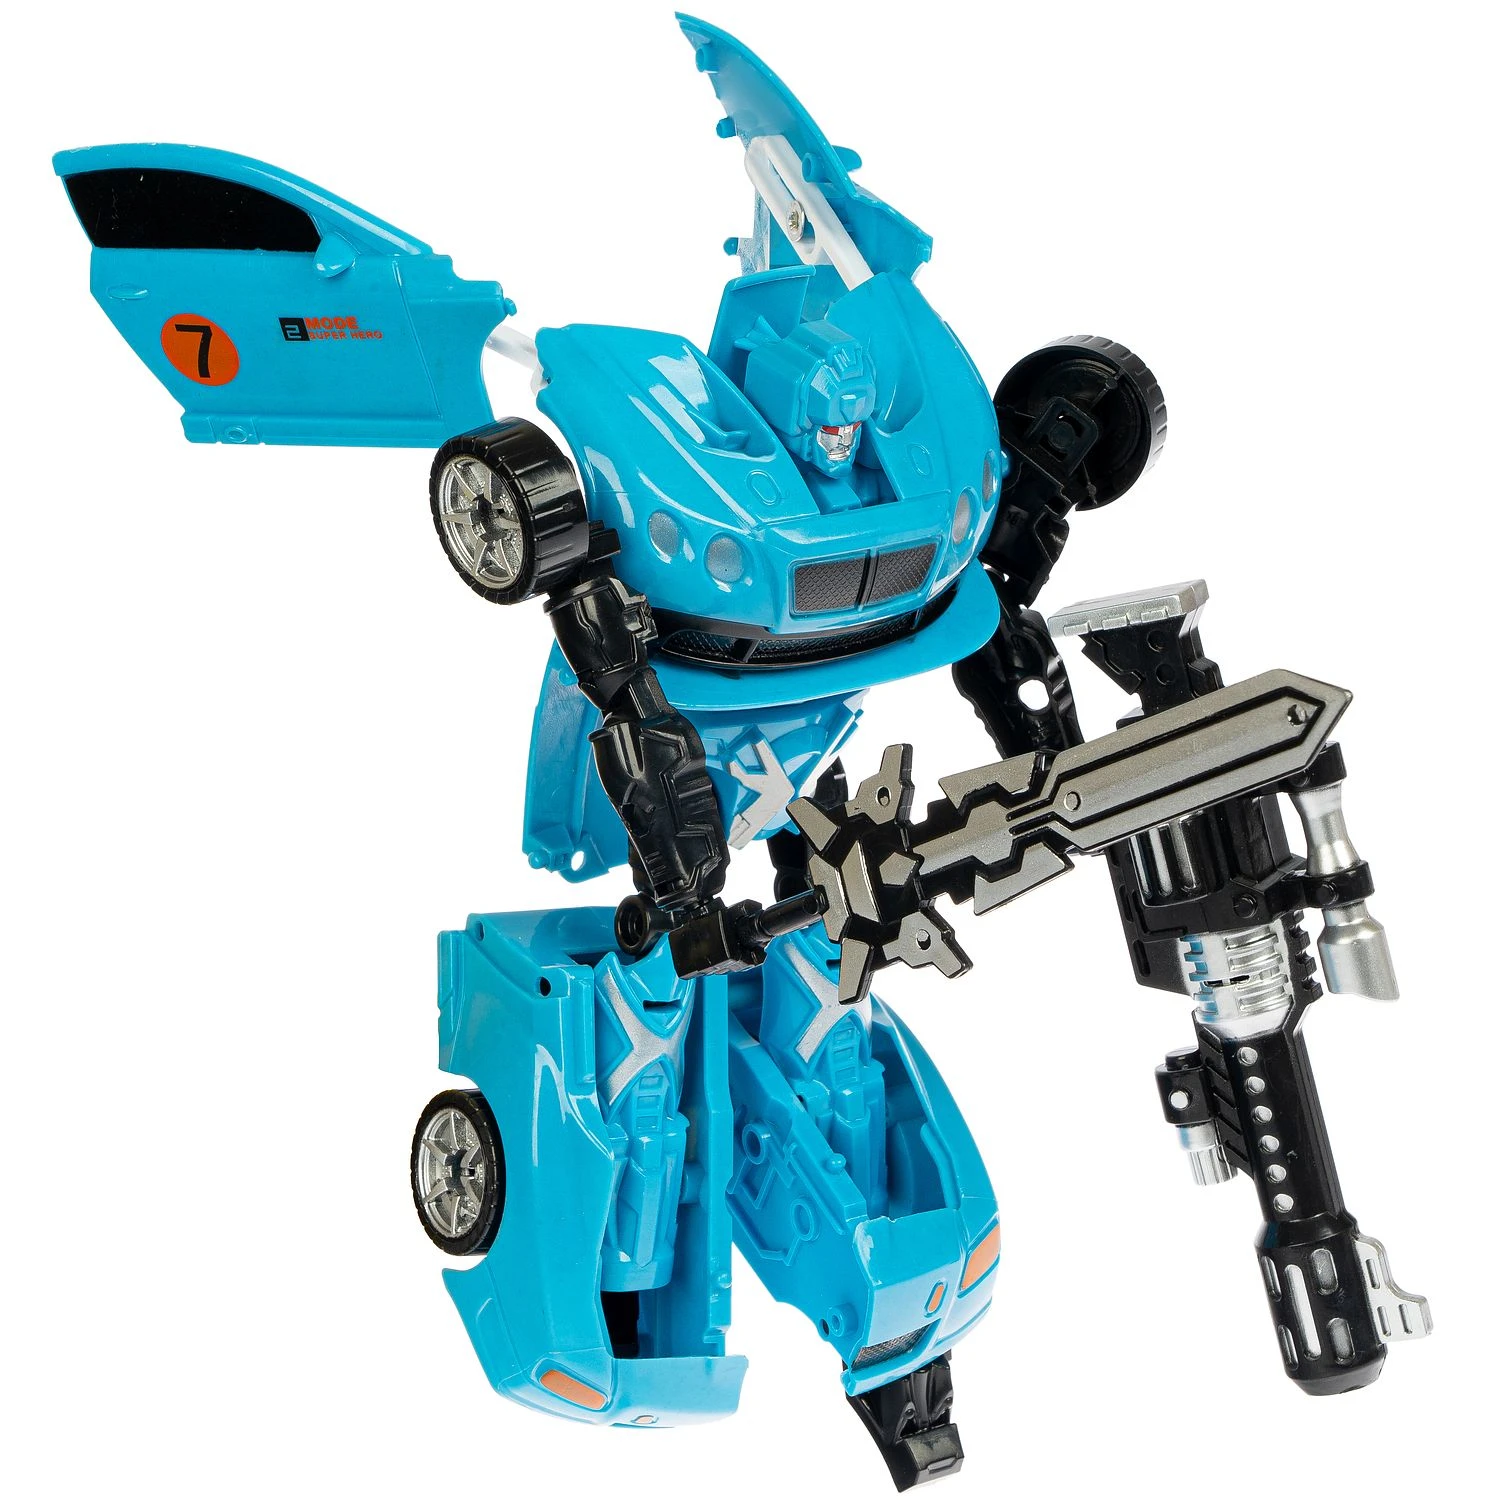 Трансформер 2в1 BONDIBOT робот и автомобиль, Bondibon, цвет синий, арт.HF7177A